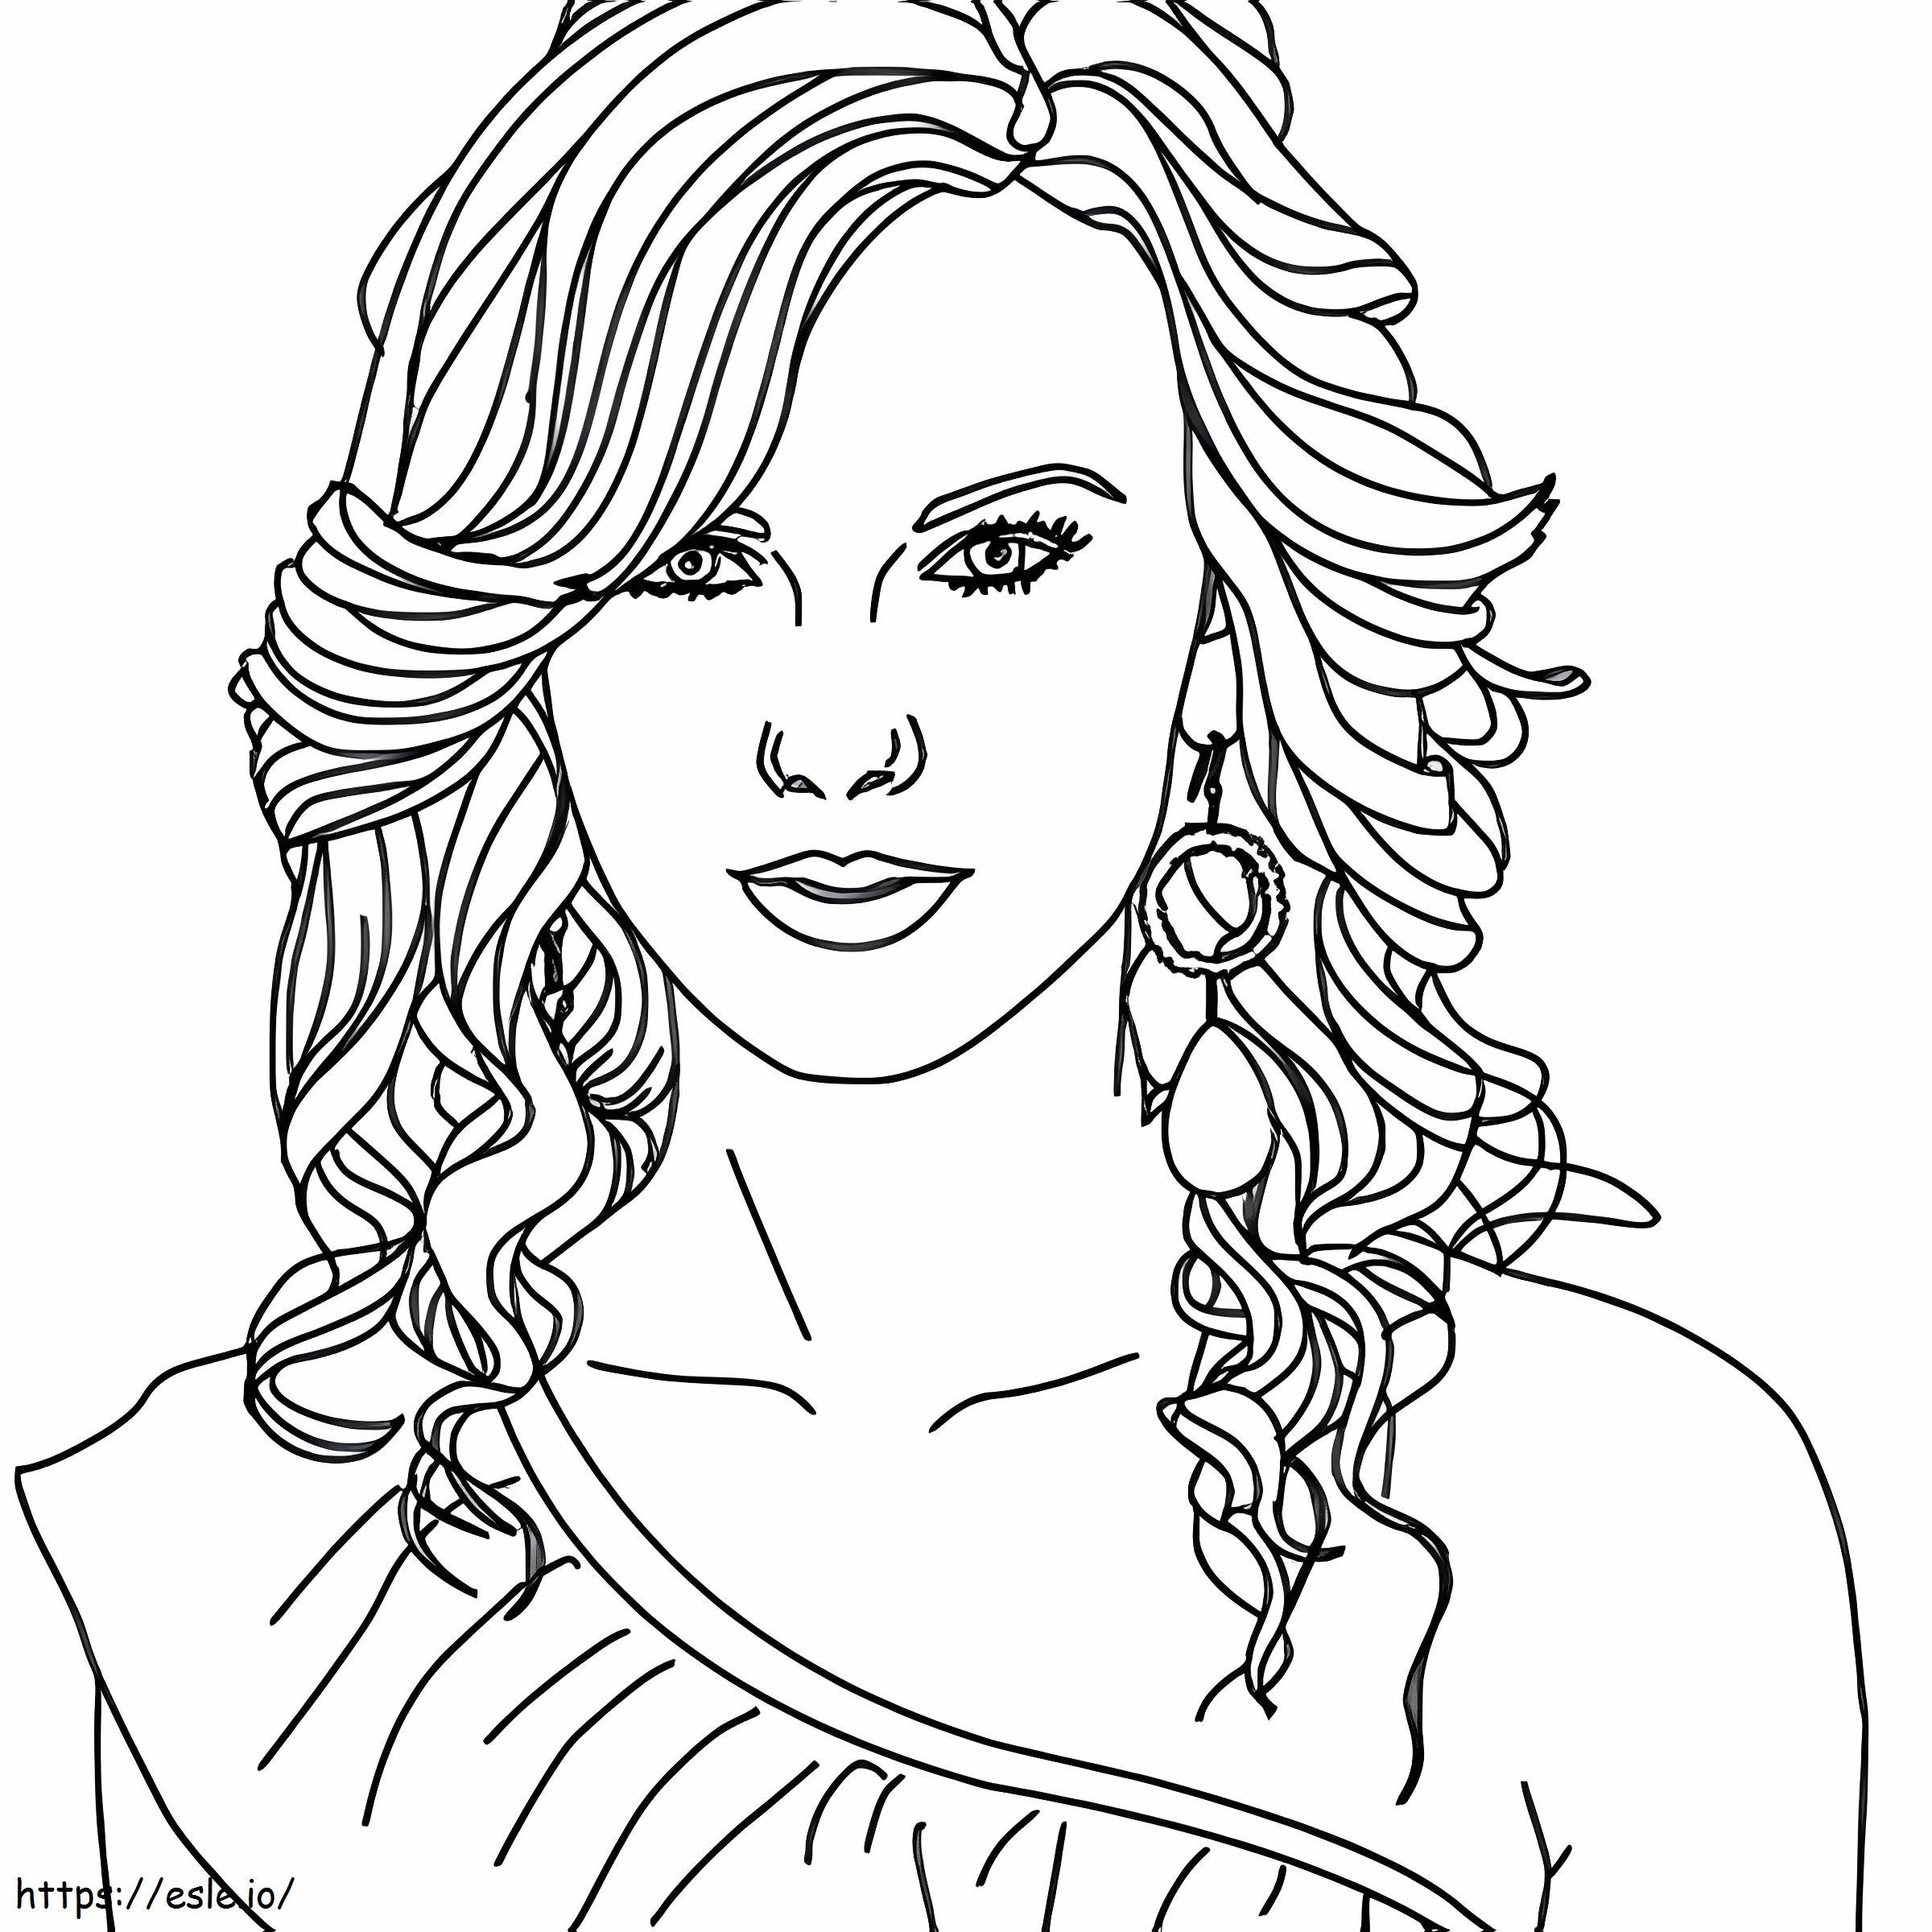 Coloriage 1541143686 Taylor Swift Images à colorier Taylor Swift Télécharger Jokingart Taylor Swift Disney Junior Activity Pages 600X600 1 à imprimer dessin